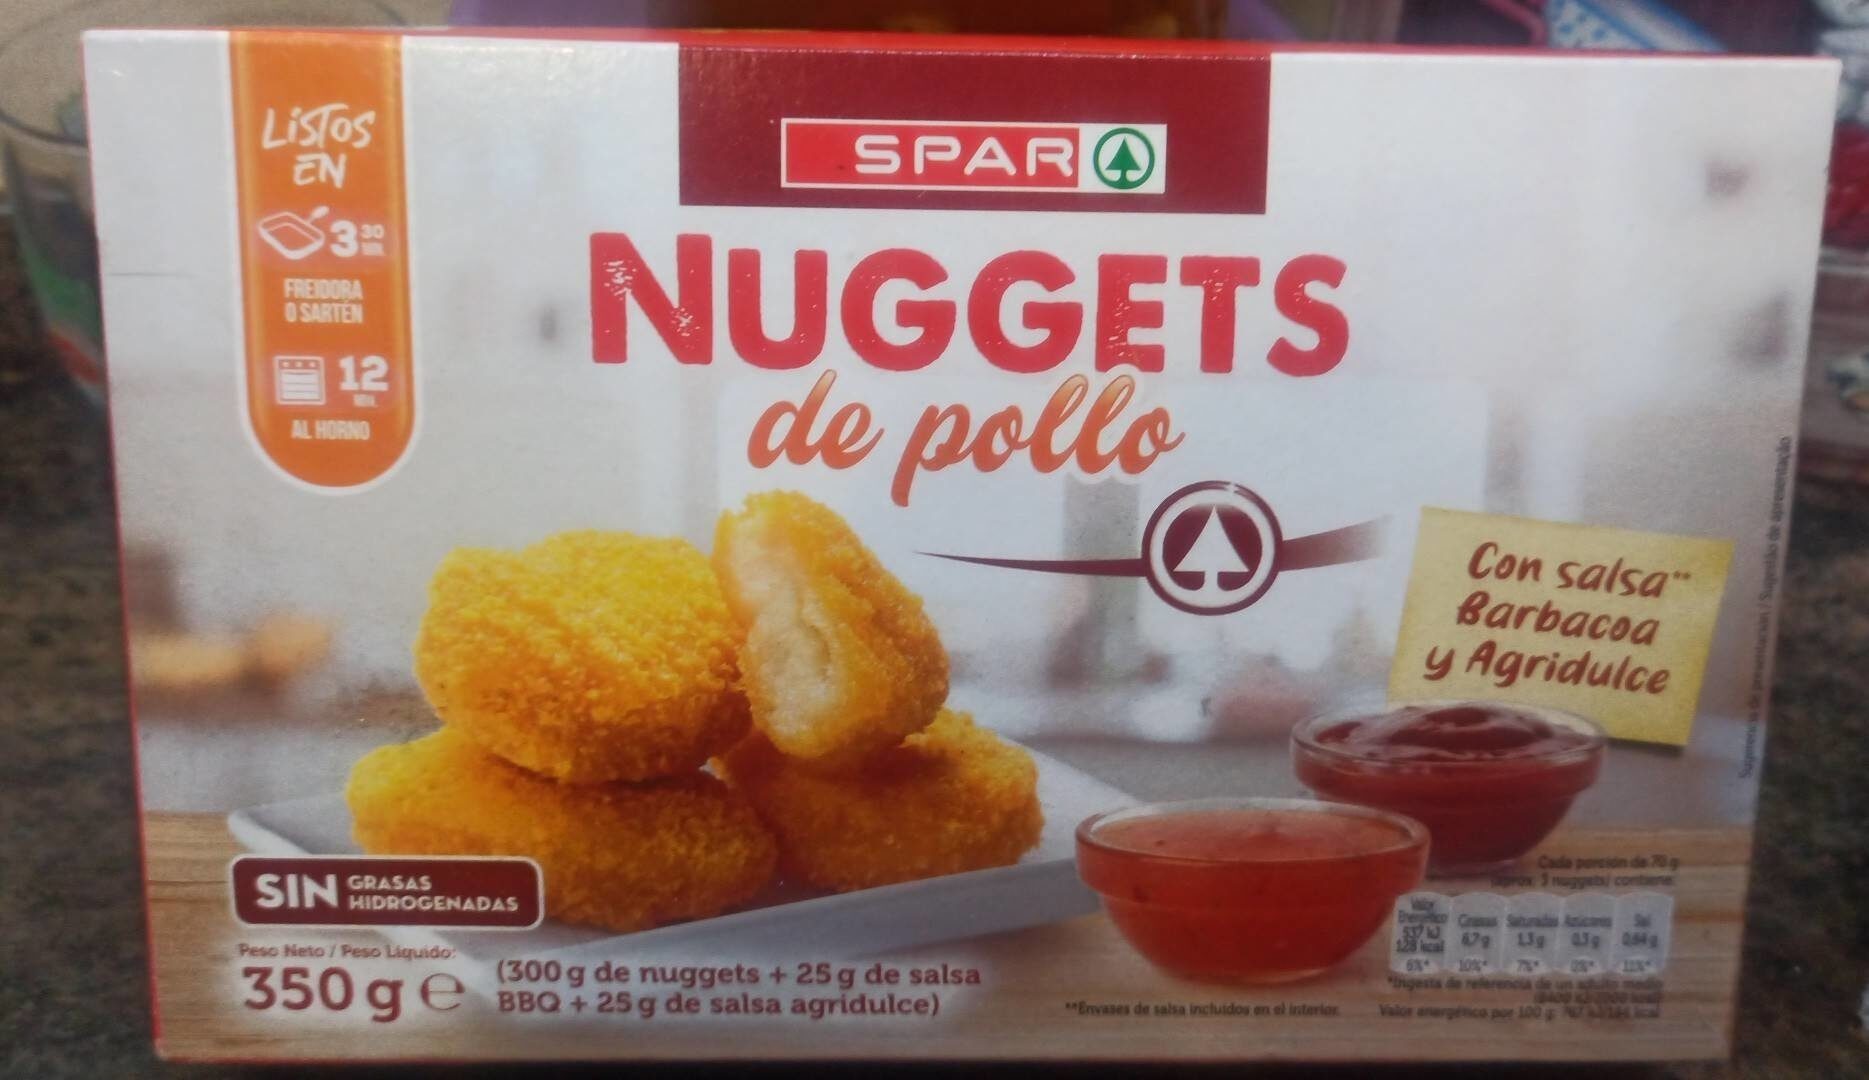 Nuggets de pollo - Product - es